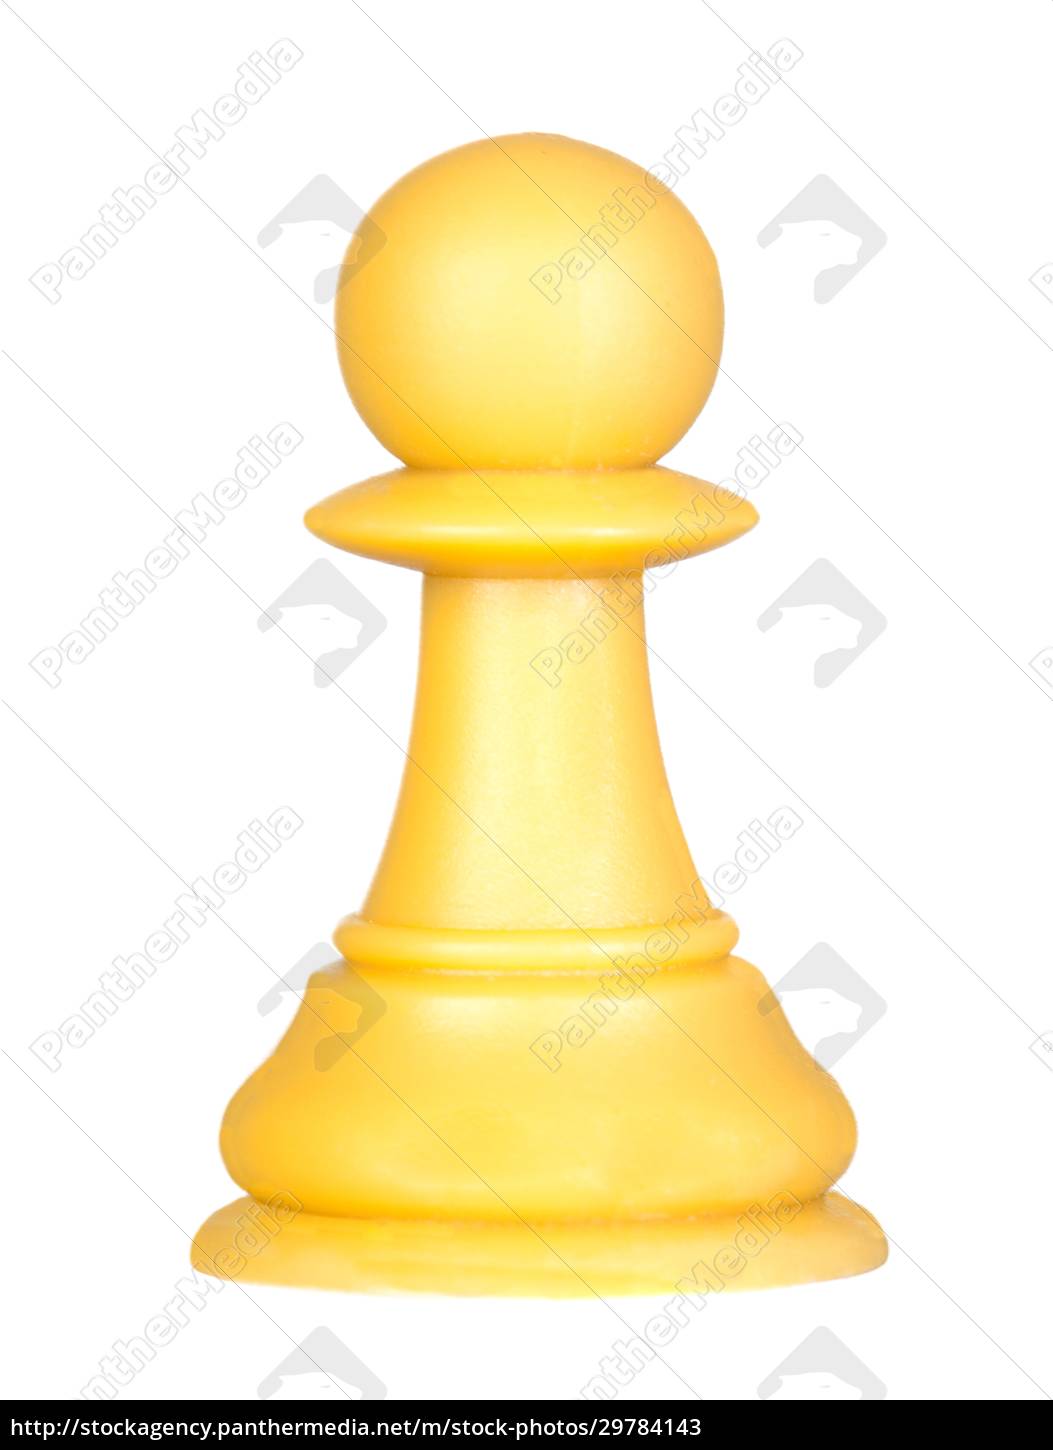 O peão branco peça de xadrez - Fotos de arquivo #29784143